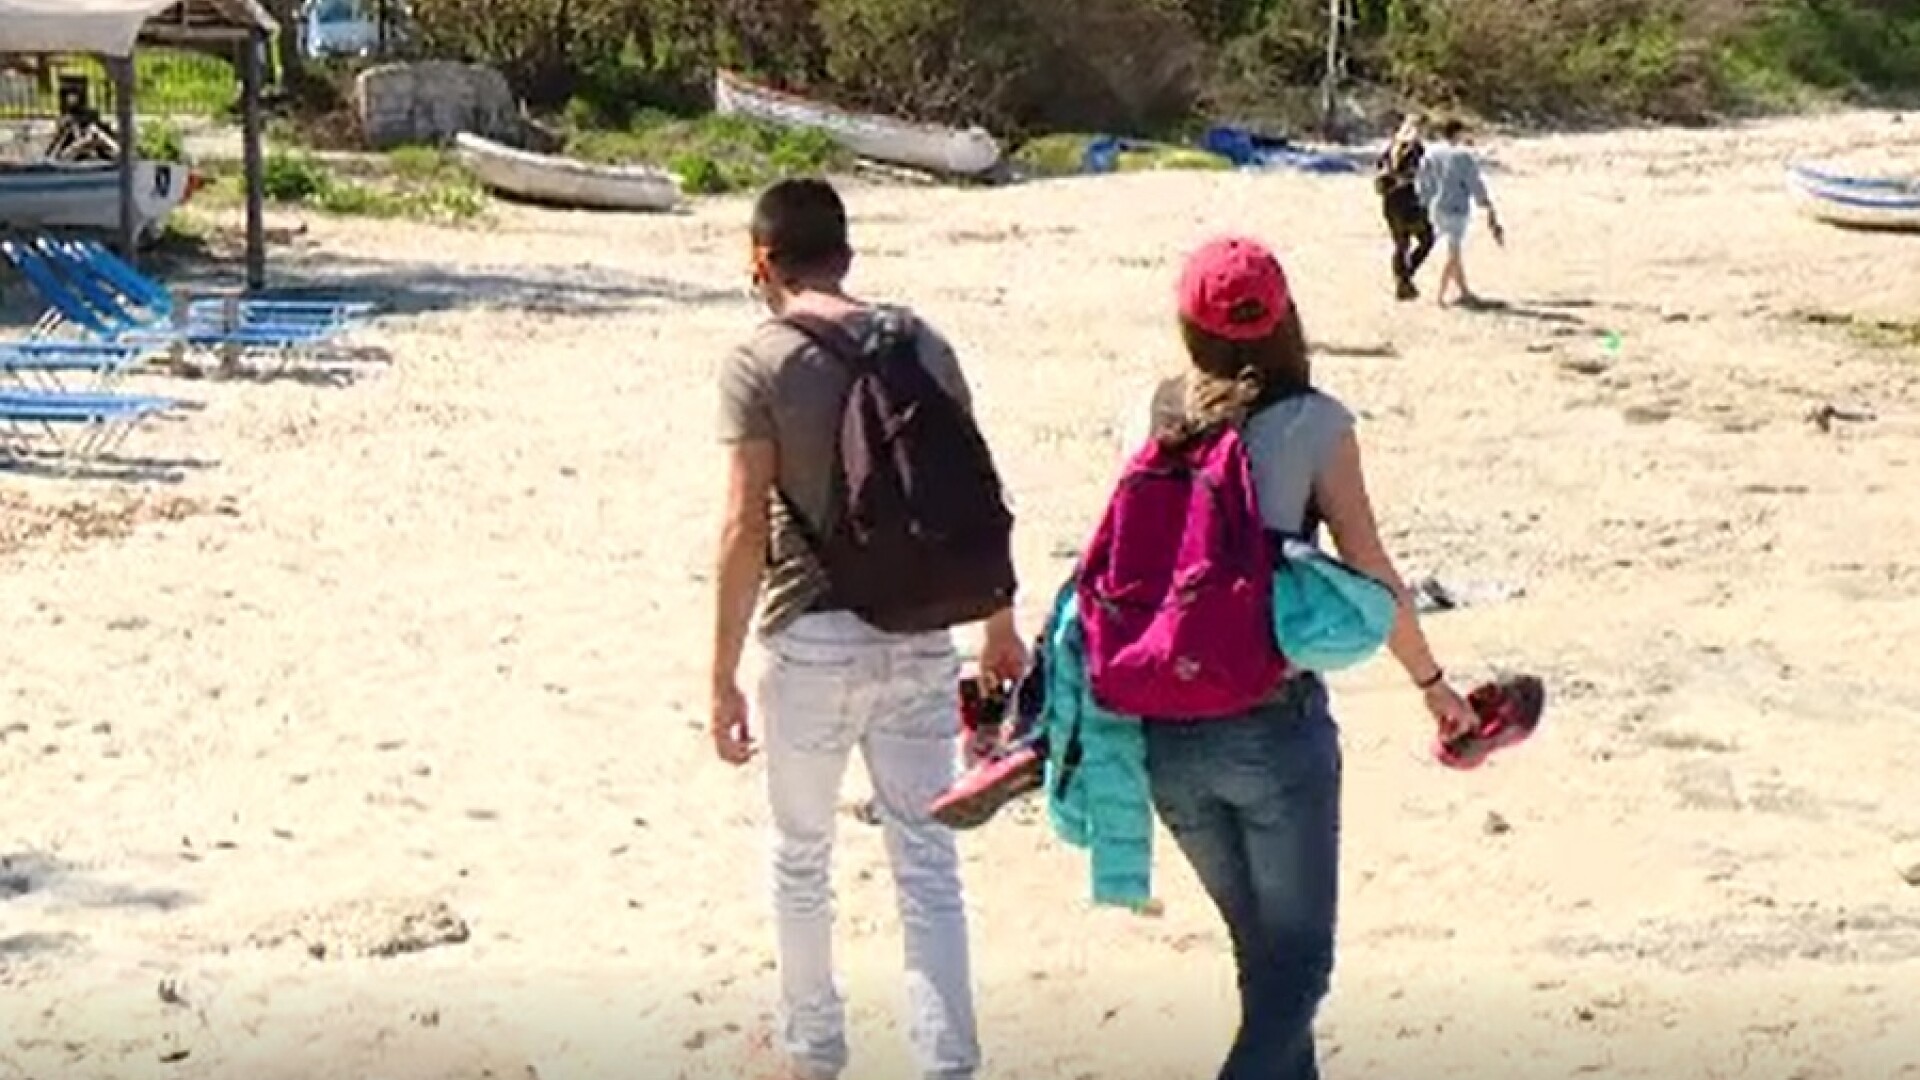 Vacanță de coșmar pentru zeci d români în Grecia, după ce un turist a fost anunțat că are Covid